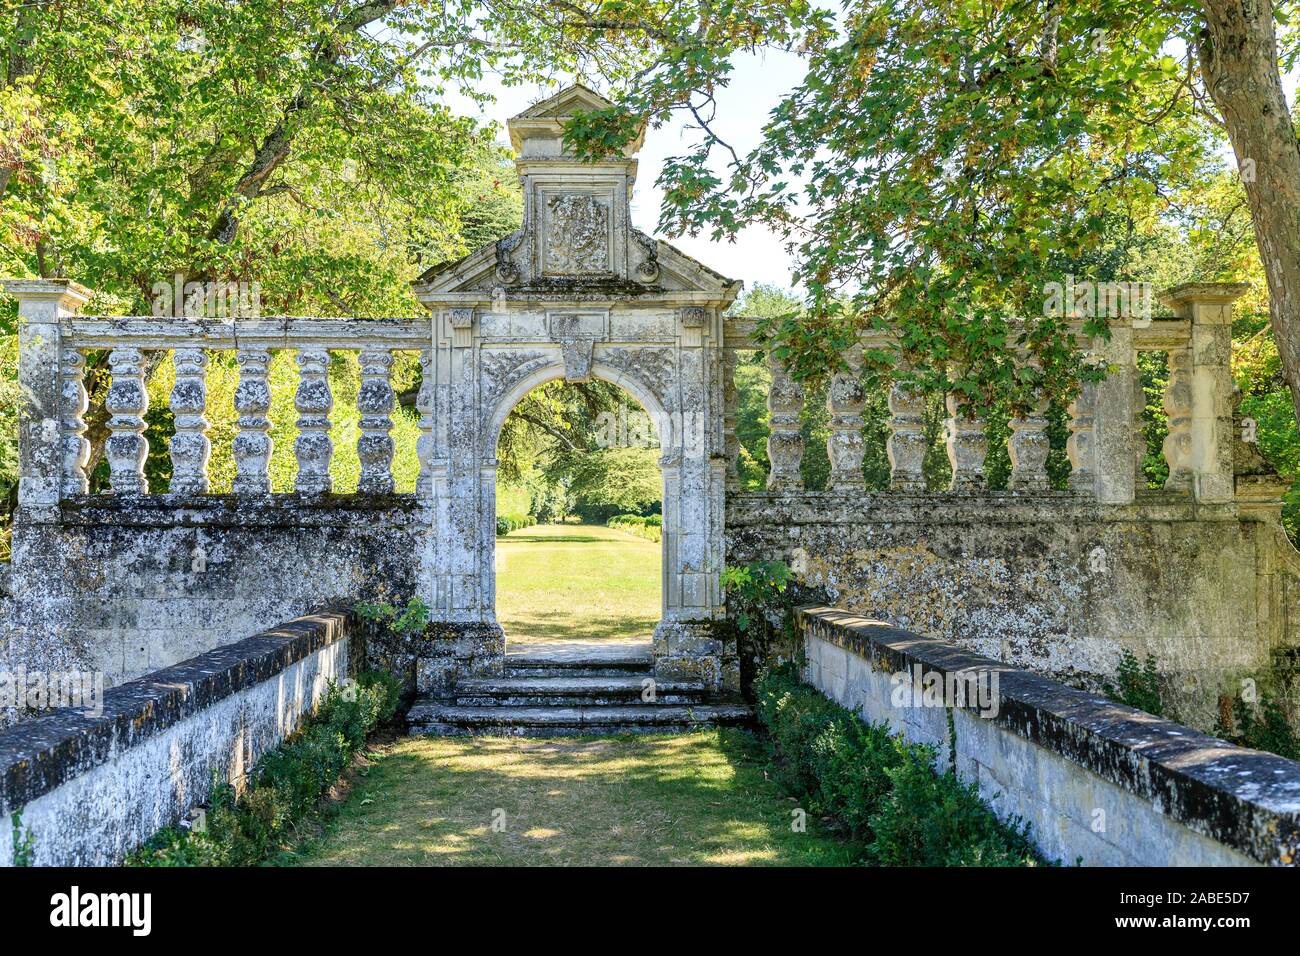 France, Indre et Loire, Loire Valley listed as World Heritage by UNESCO, Montlouis sur Loire, Chateau de la Bourdaisiere park and gardens, the Italian Stock Photo